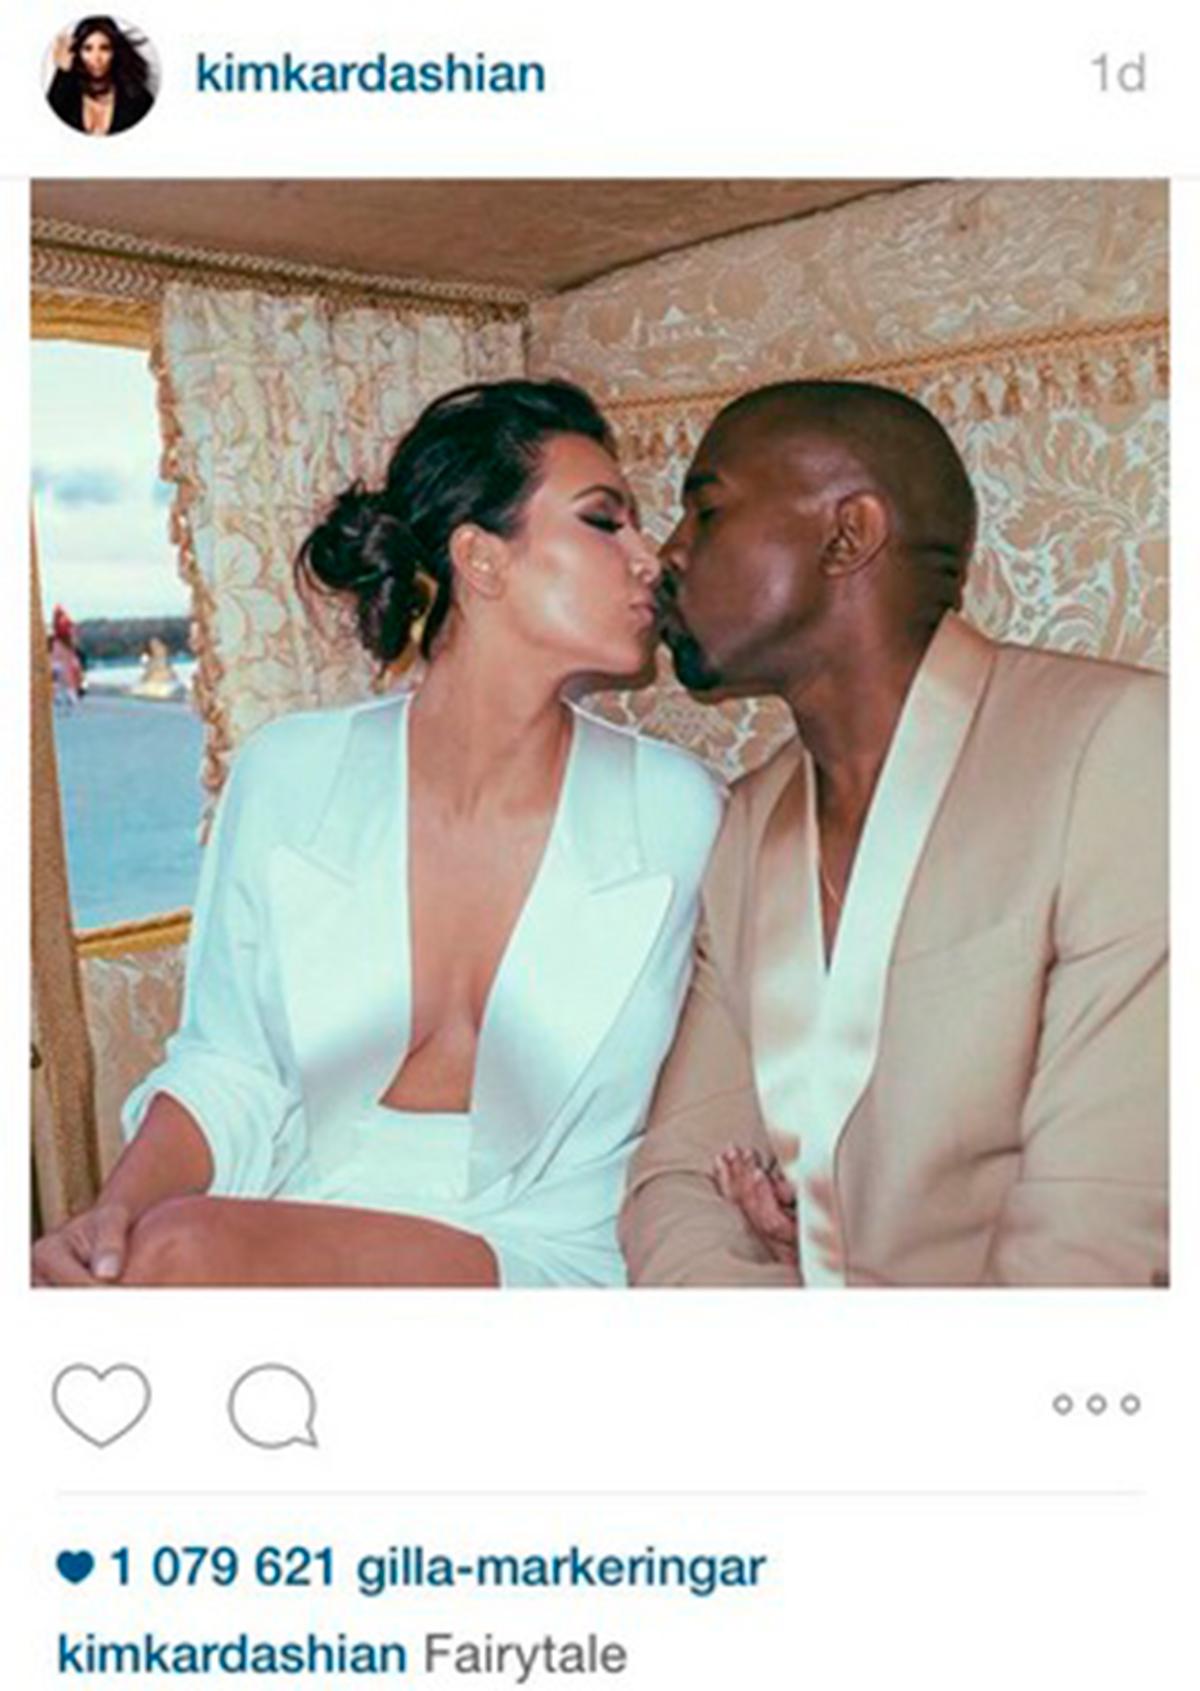 Kim bjuckar på bildextra från festen! Var Kim firade sitt första år som Mrs Kardashian-West? På favvoplatsen Instagram så klart! Där bjussade realitydrottningen på flera aldrig tidigare visade bilder från sitt och Kanyes bröllop — bland annat inifrån parets post-vigsel-photobooth-session...